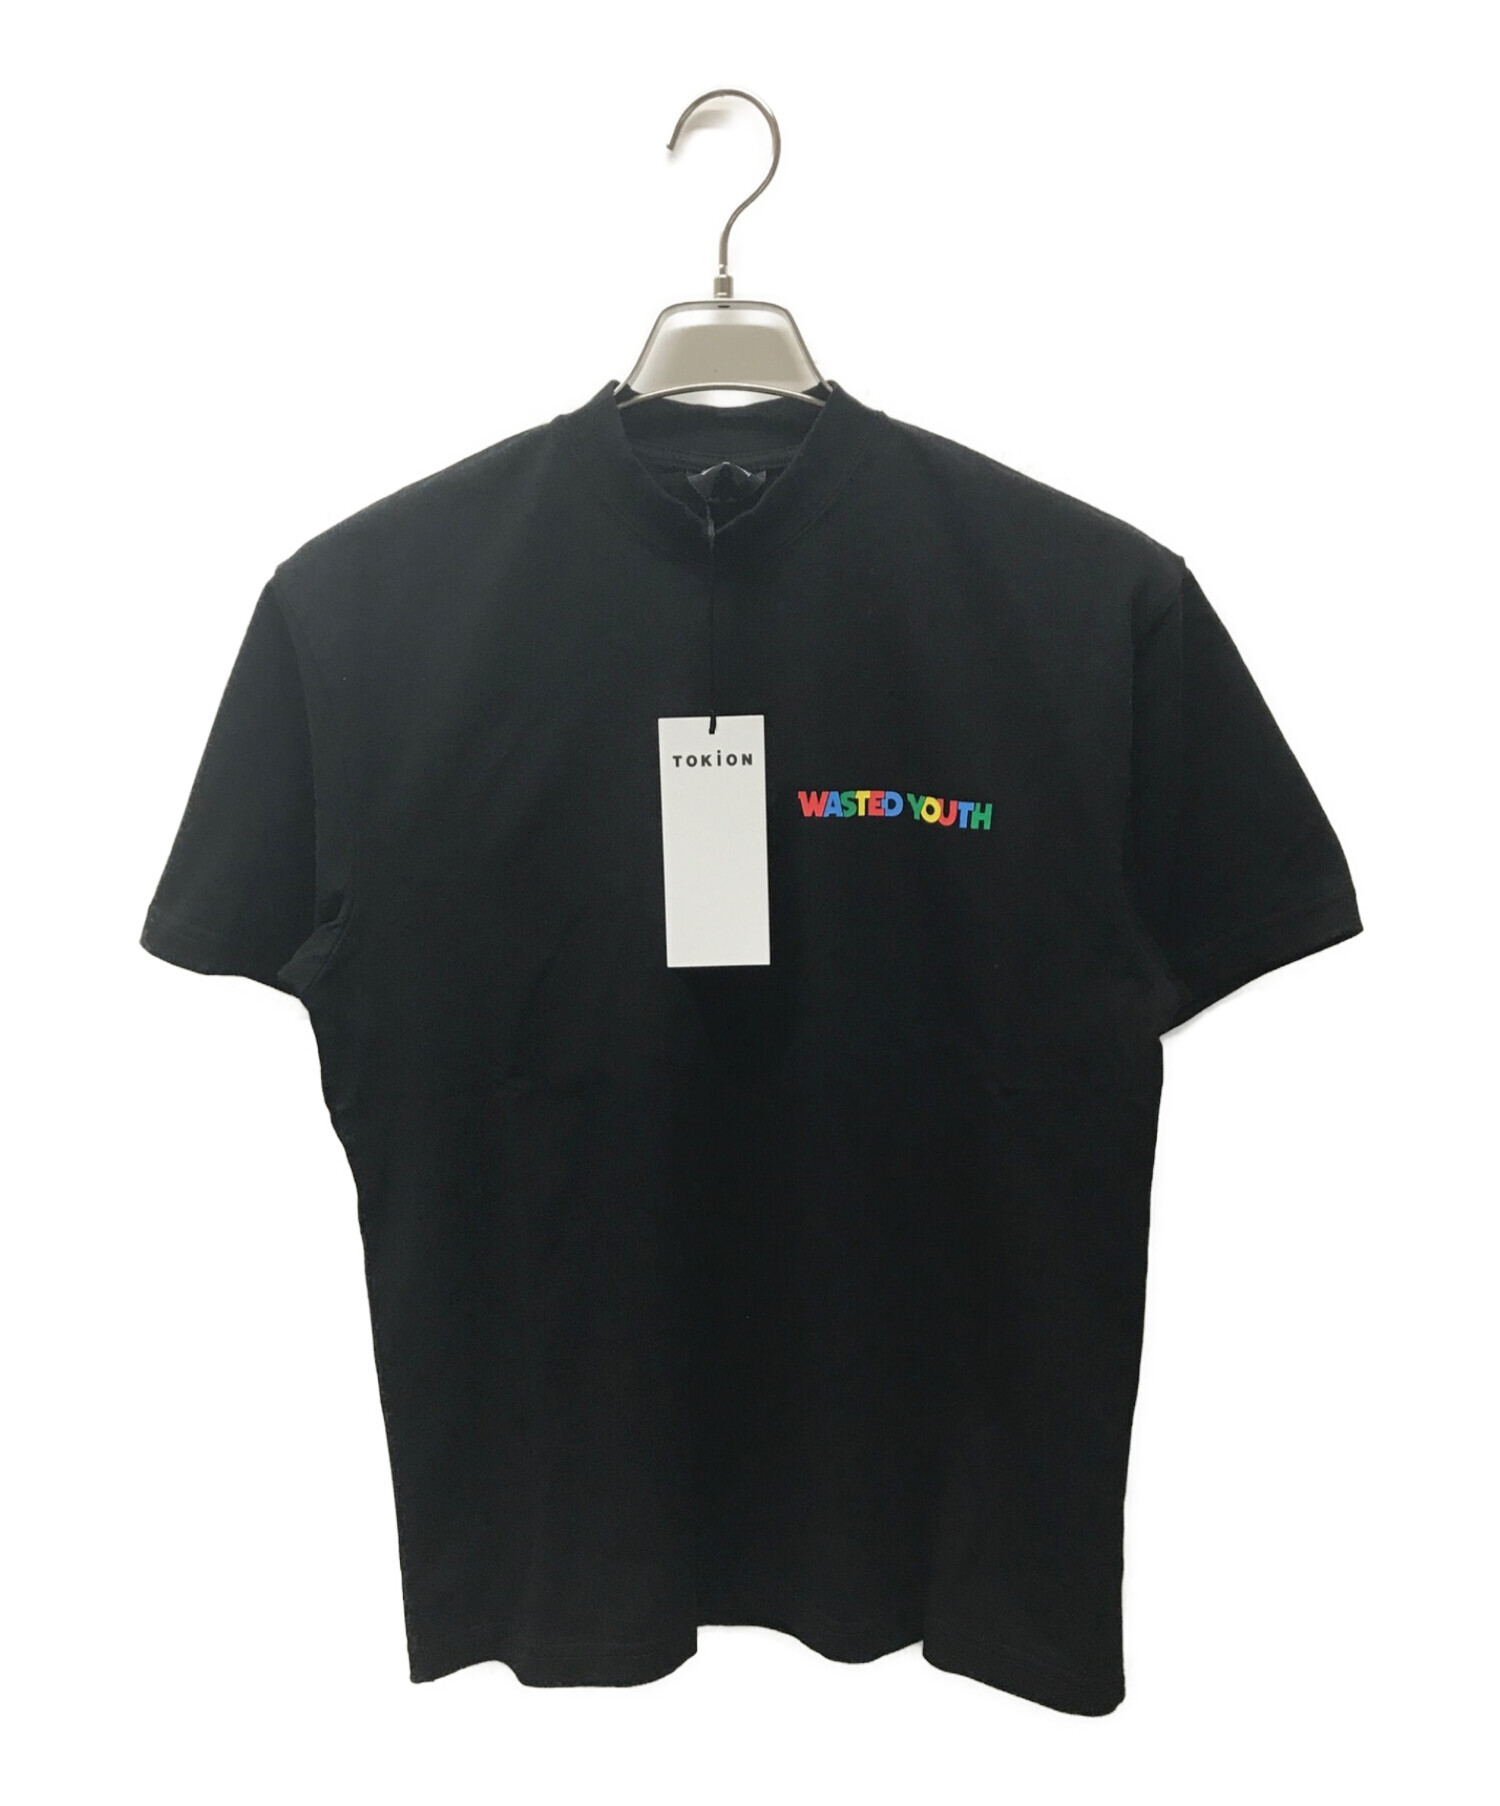 Wasted youth×POSCA (ウェステッドユース×ポスカ) ロゴプリントTシャツ ブラック サイズ:S 未使用品